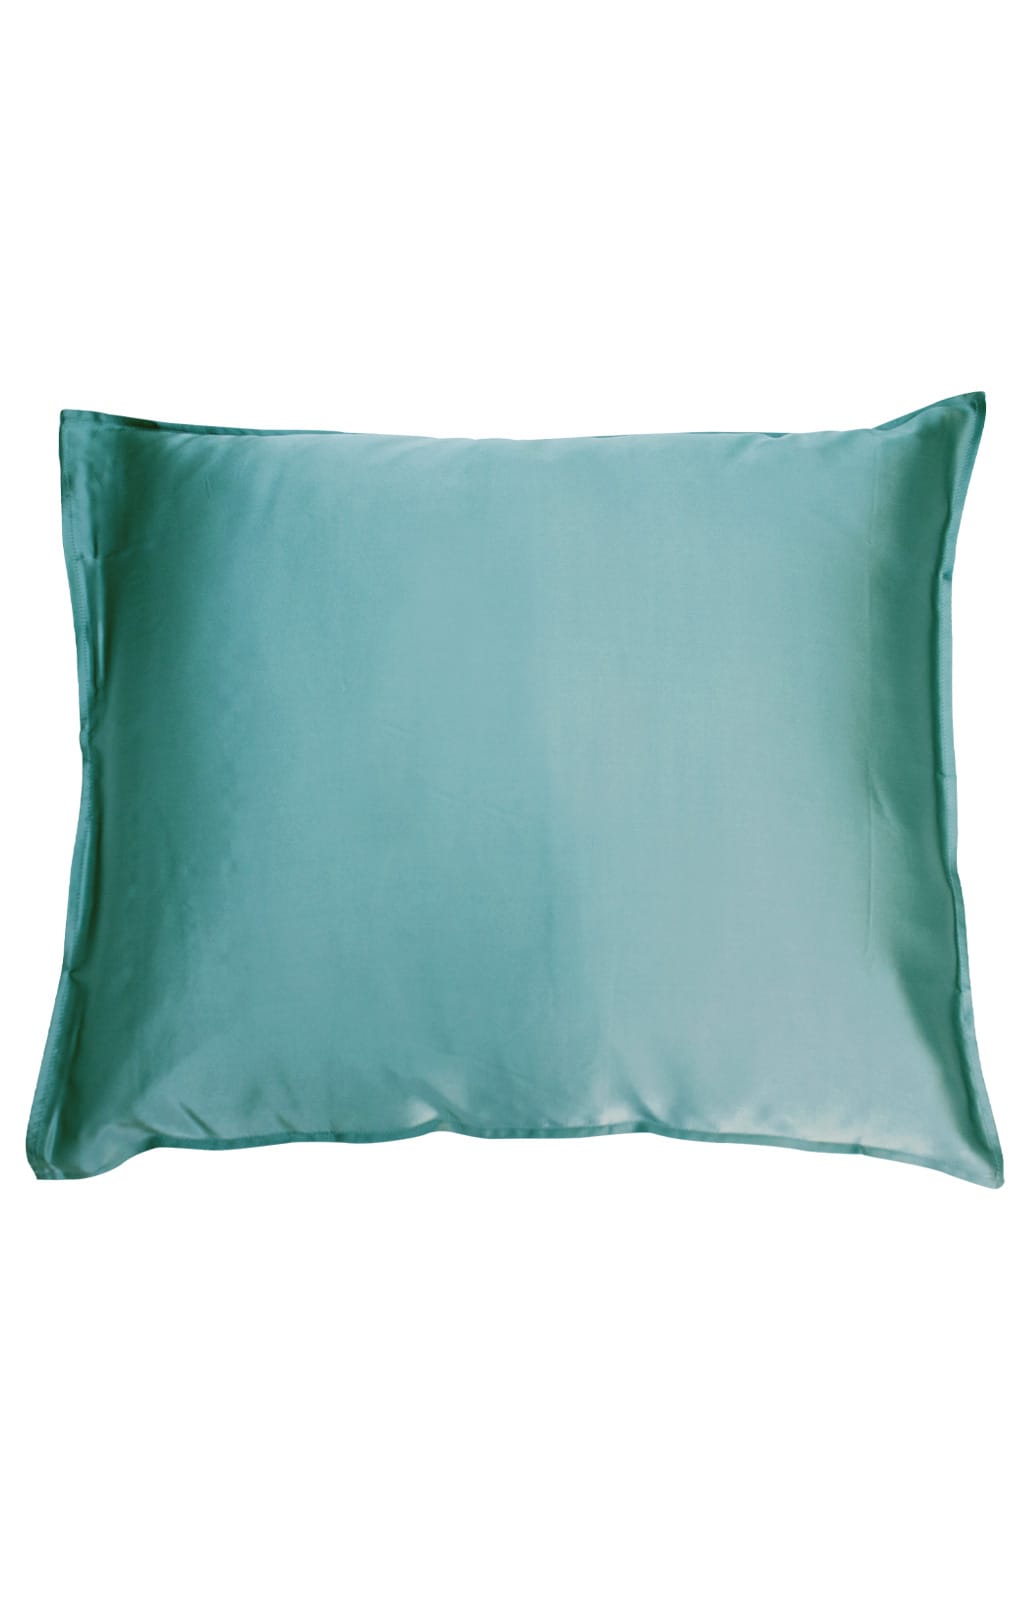 Silk pillowcase, ocean blue